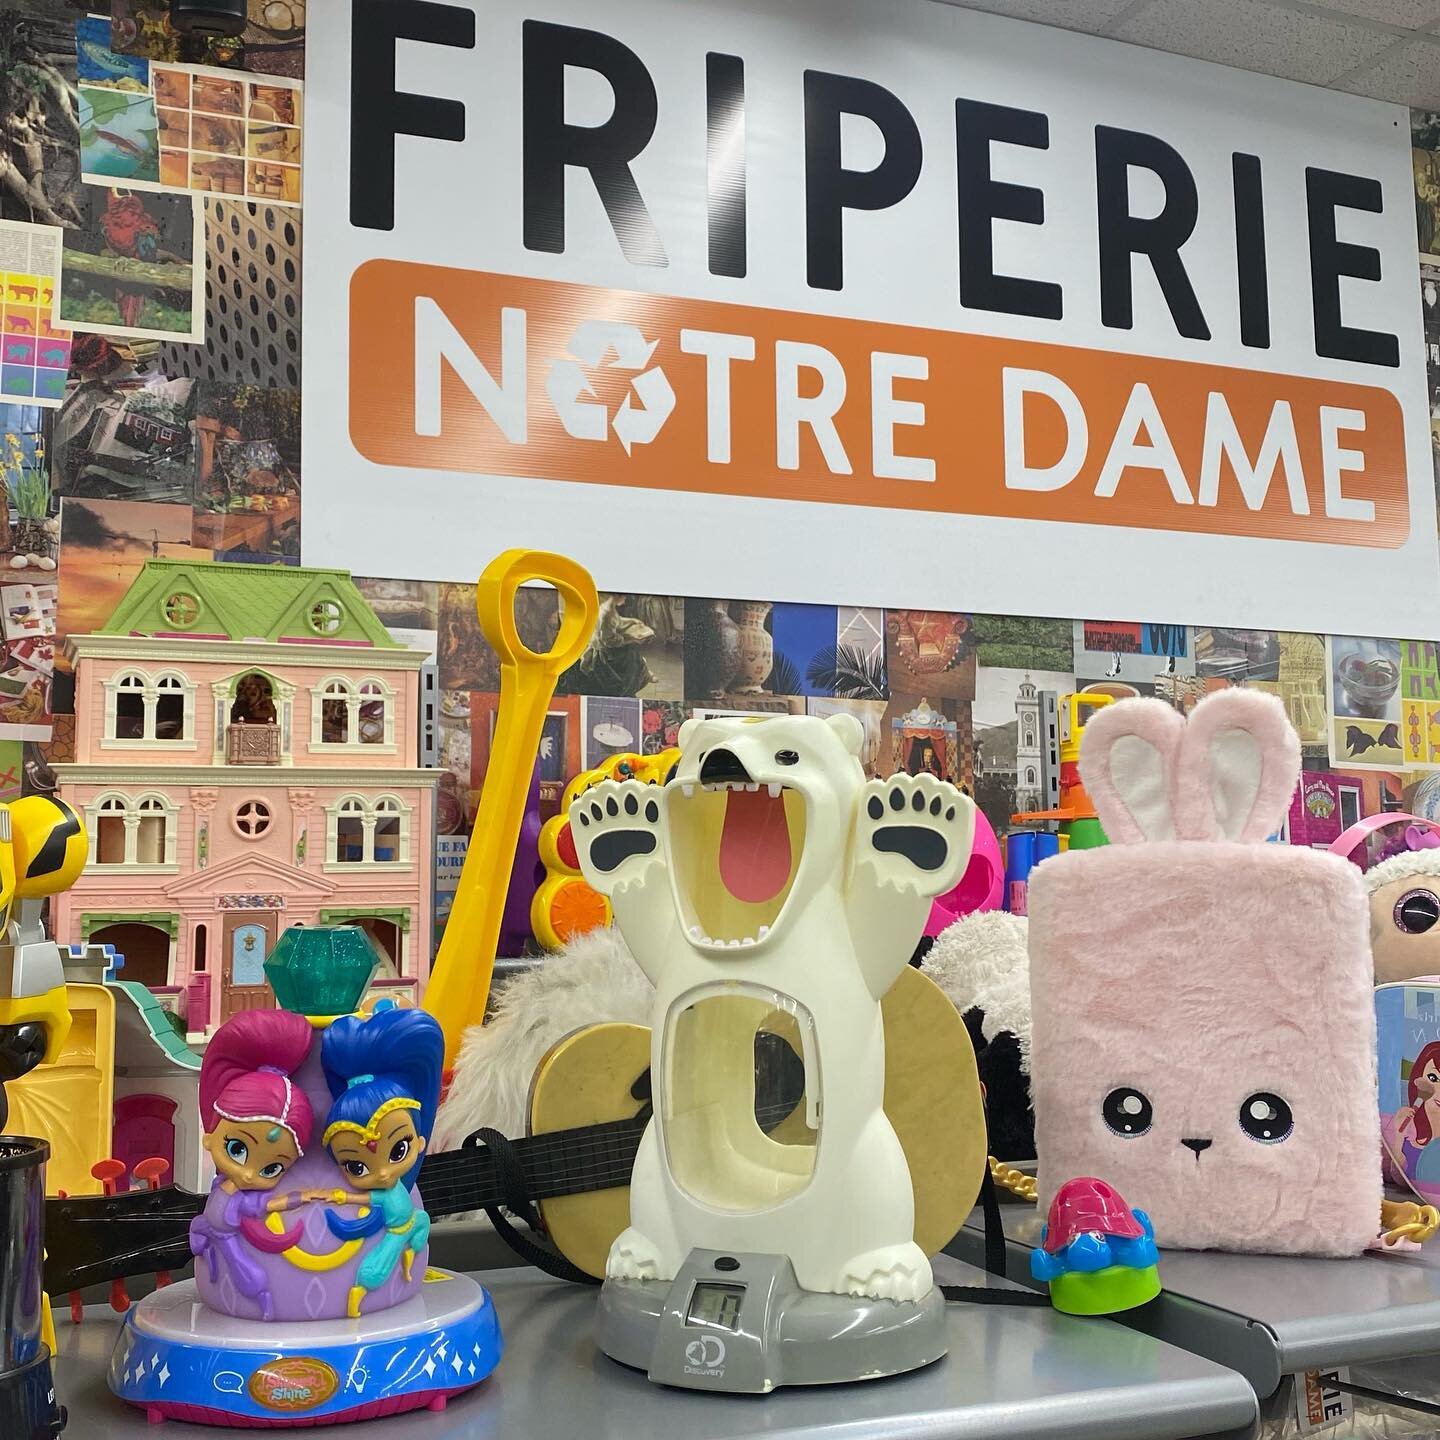 Notre grand assortiment de jouets a tellement d'options pour apporter du bonheur &agrave; votre tout-petit (et au petit qui est en vous aussi 😜!) 📍950 rue Notre Dame, Lachine
⏰ 10h - 18h 
🧸🪁🪀🤩
.
.
.
.
#thrift #thrifted #thriftstorefinds #thrift